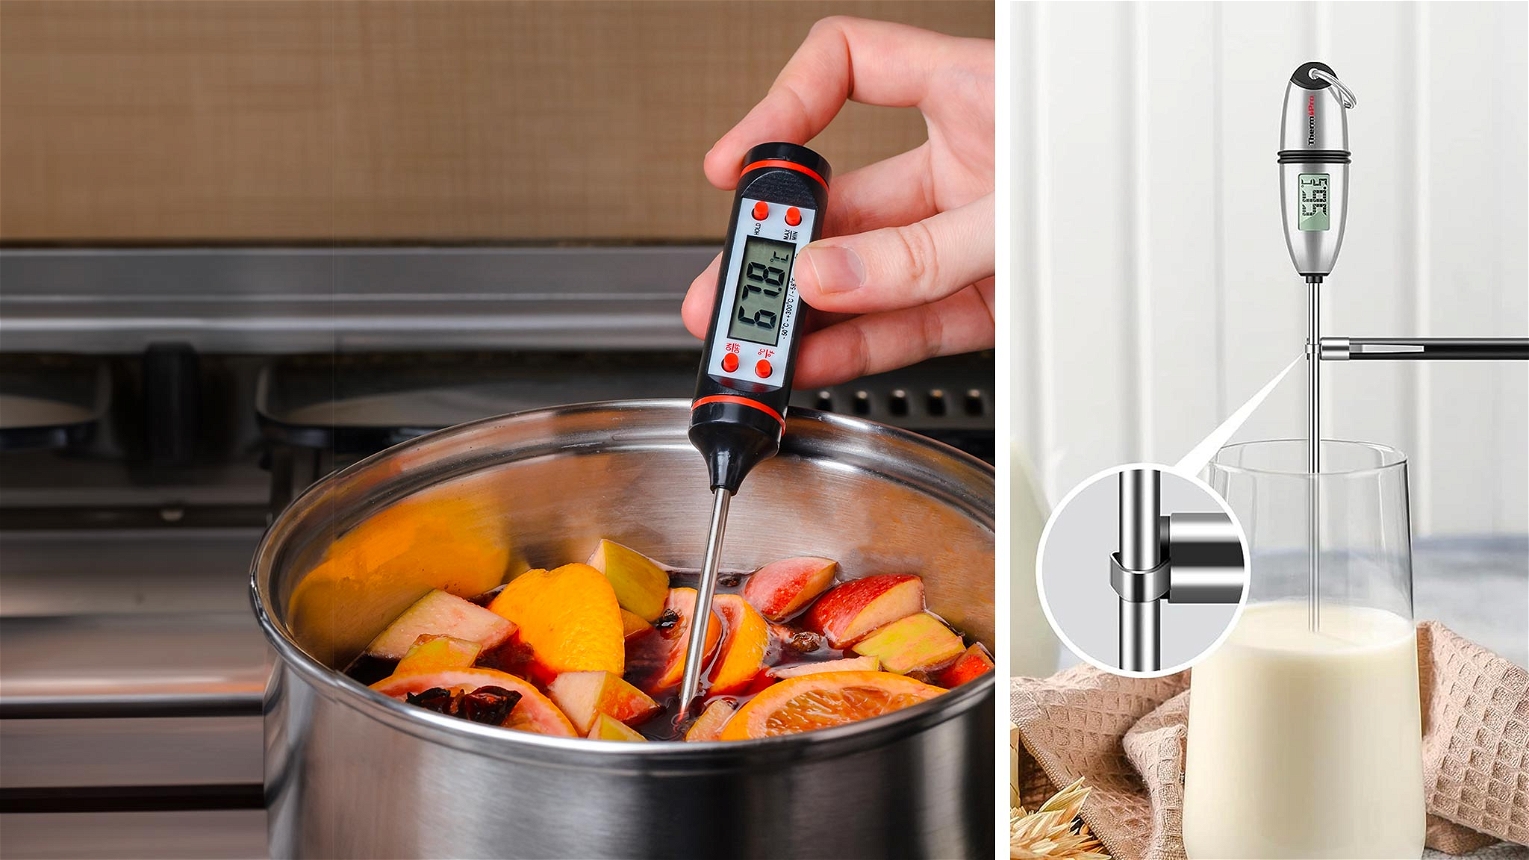 termometro da cucina in uso